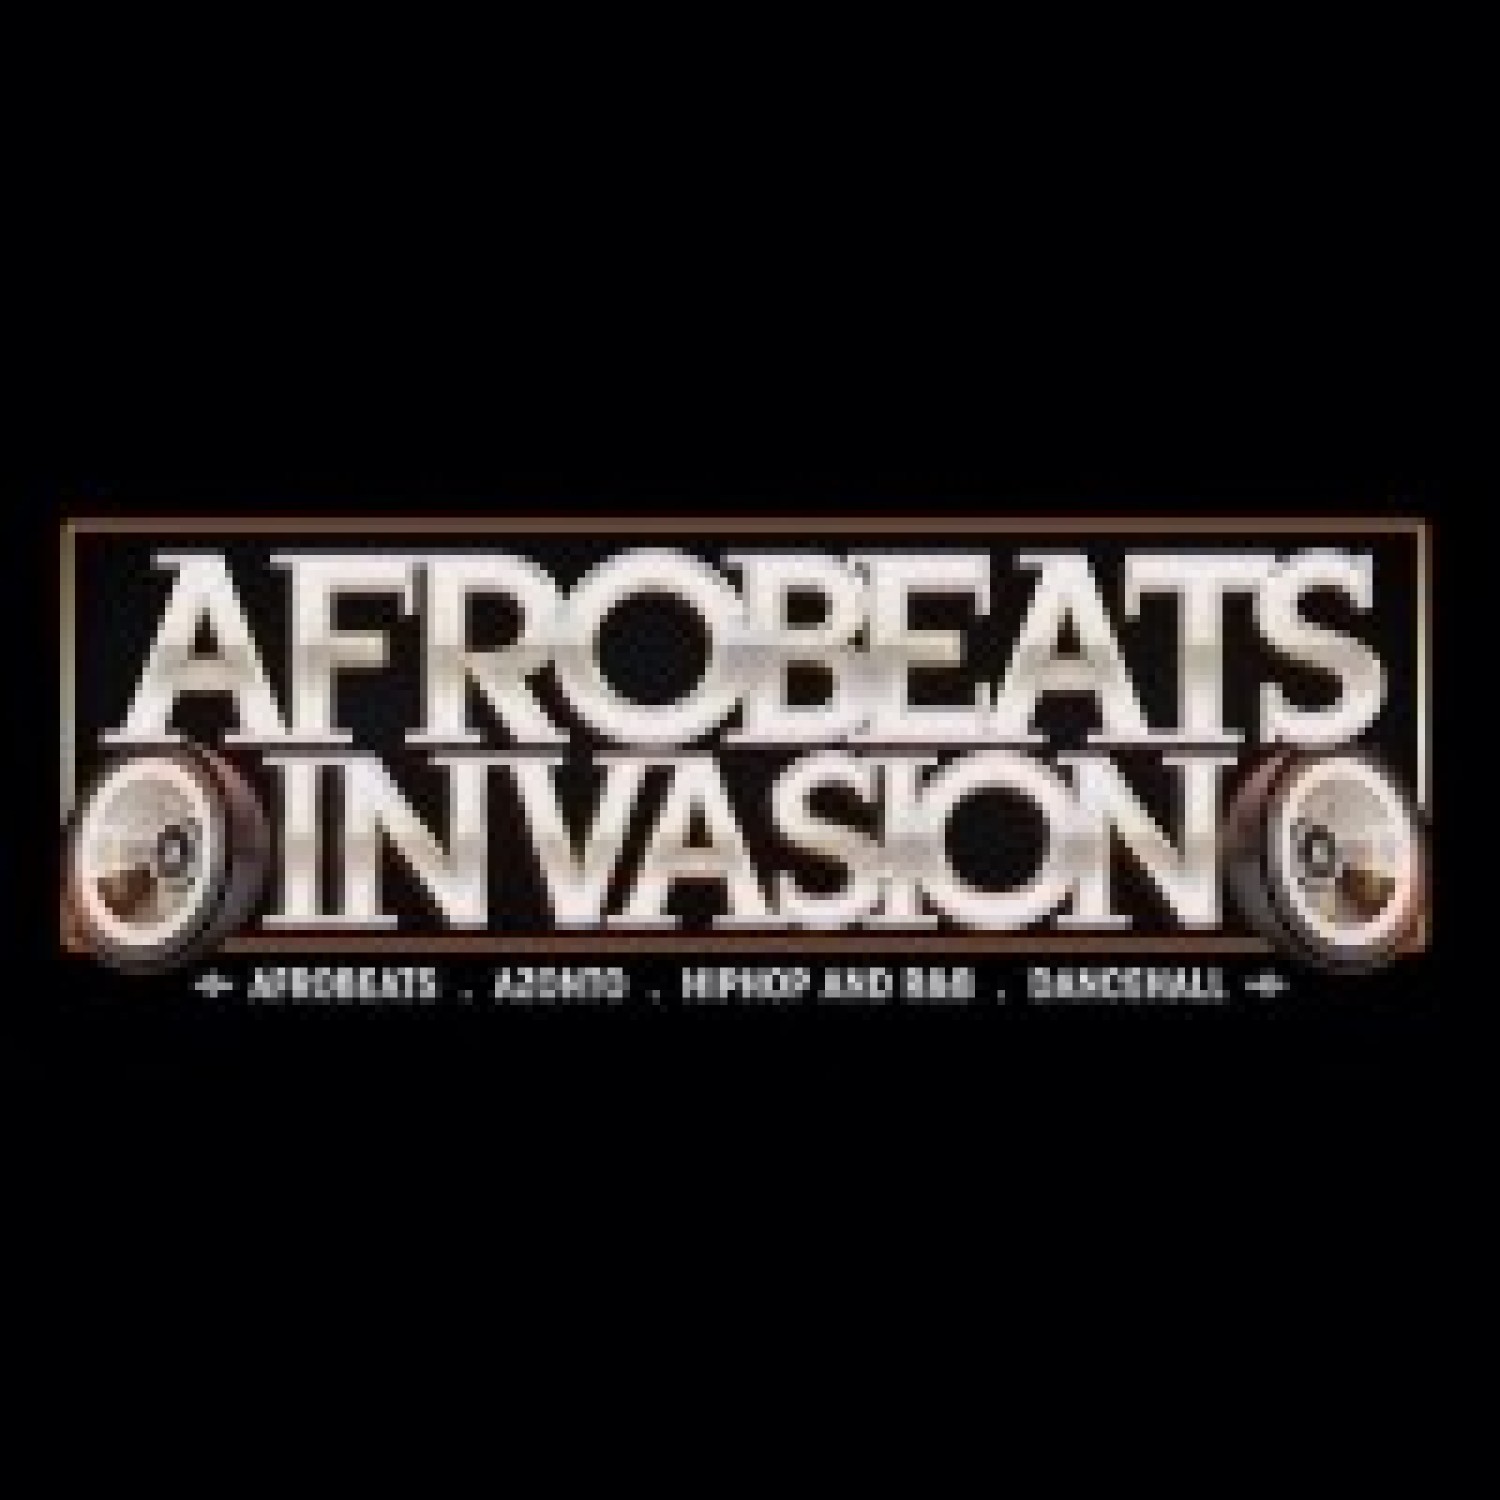 Afrobeats Invasion